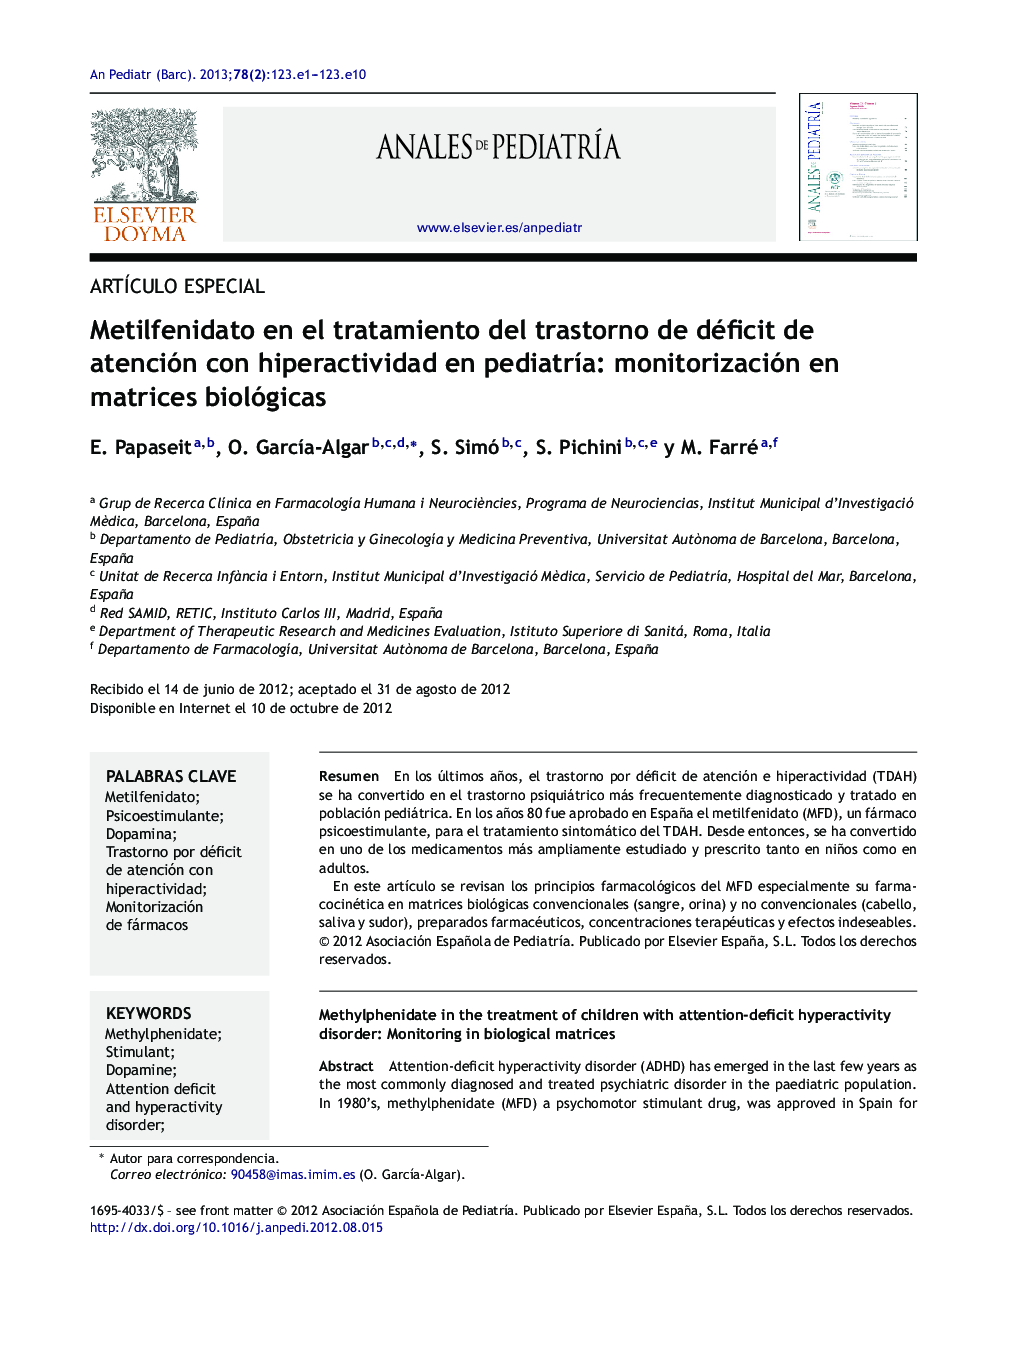 Metilfenidato en el tratamiento del trastorno de déficit de atención con hiperactividad en pediatrÃ­a: monitorización en matrices biológicas